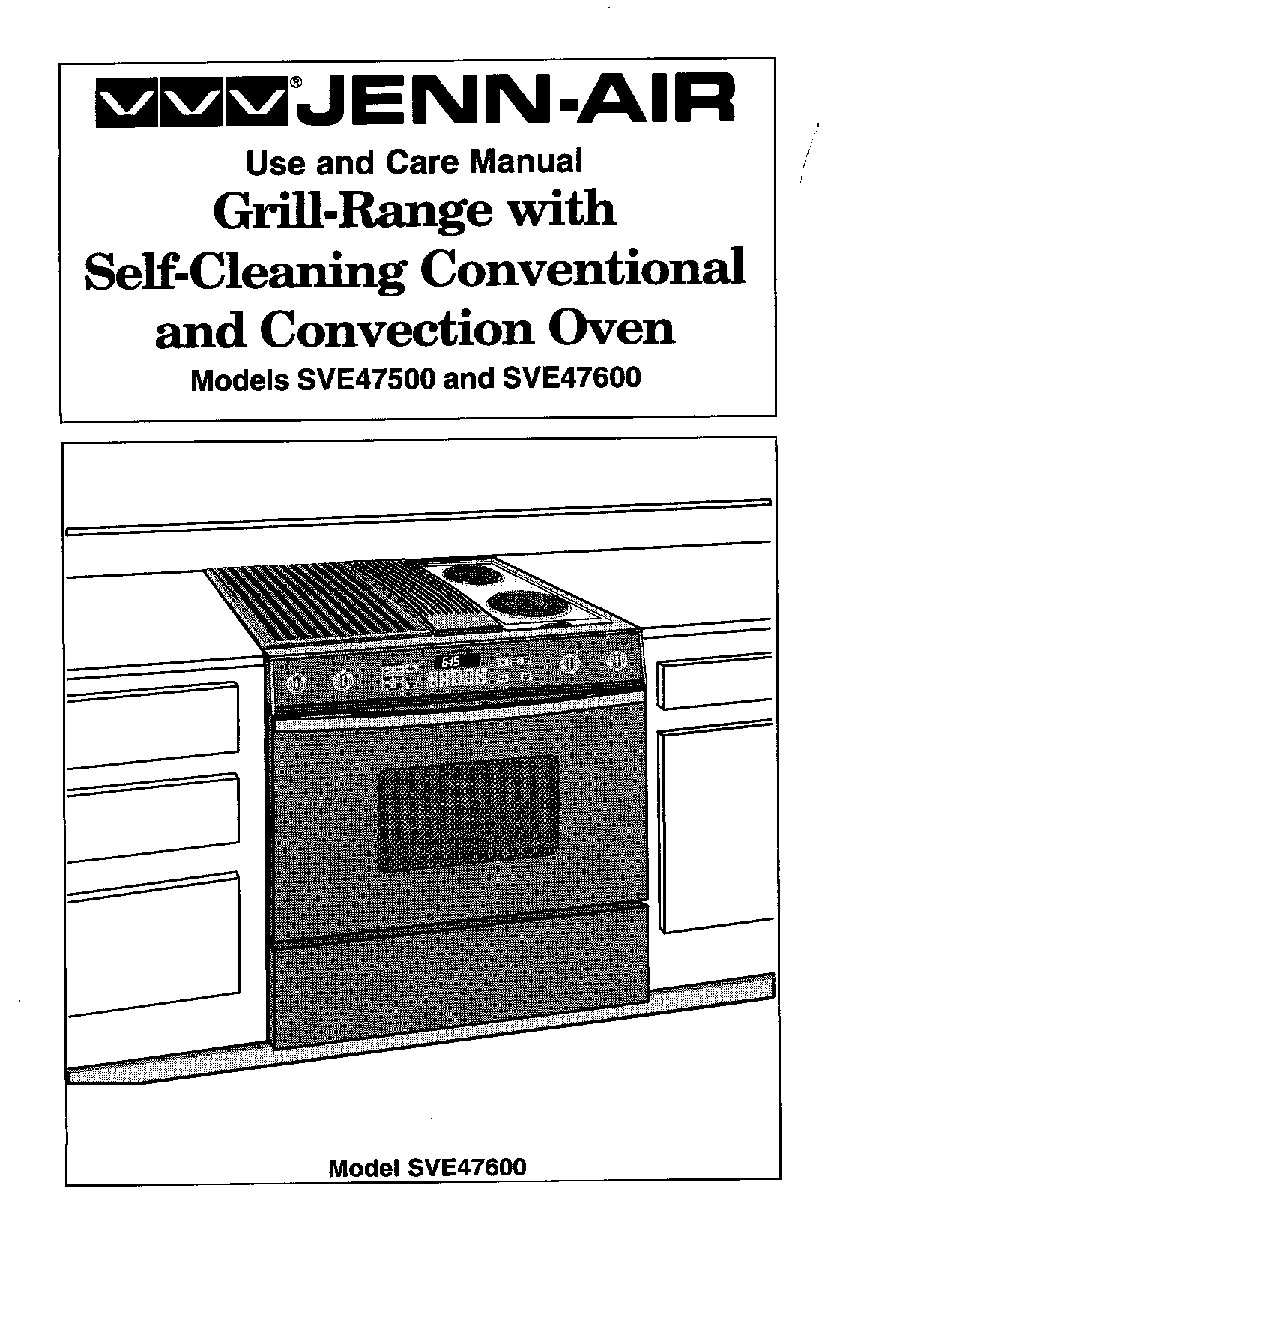 Jenn-Air SVE47600, SVE47500 User Manual